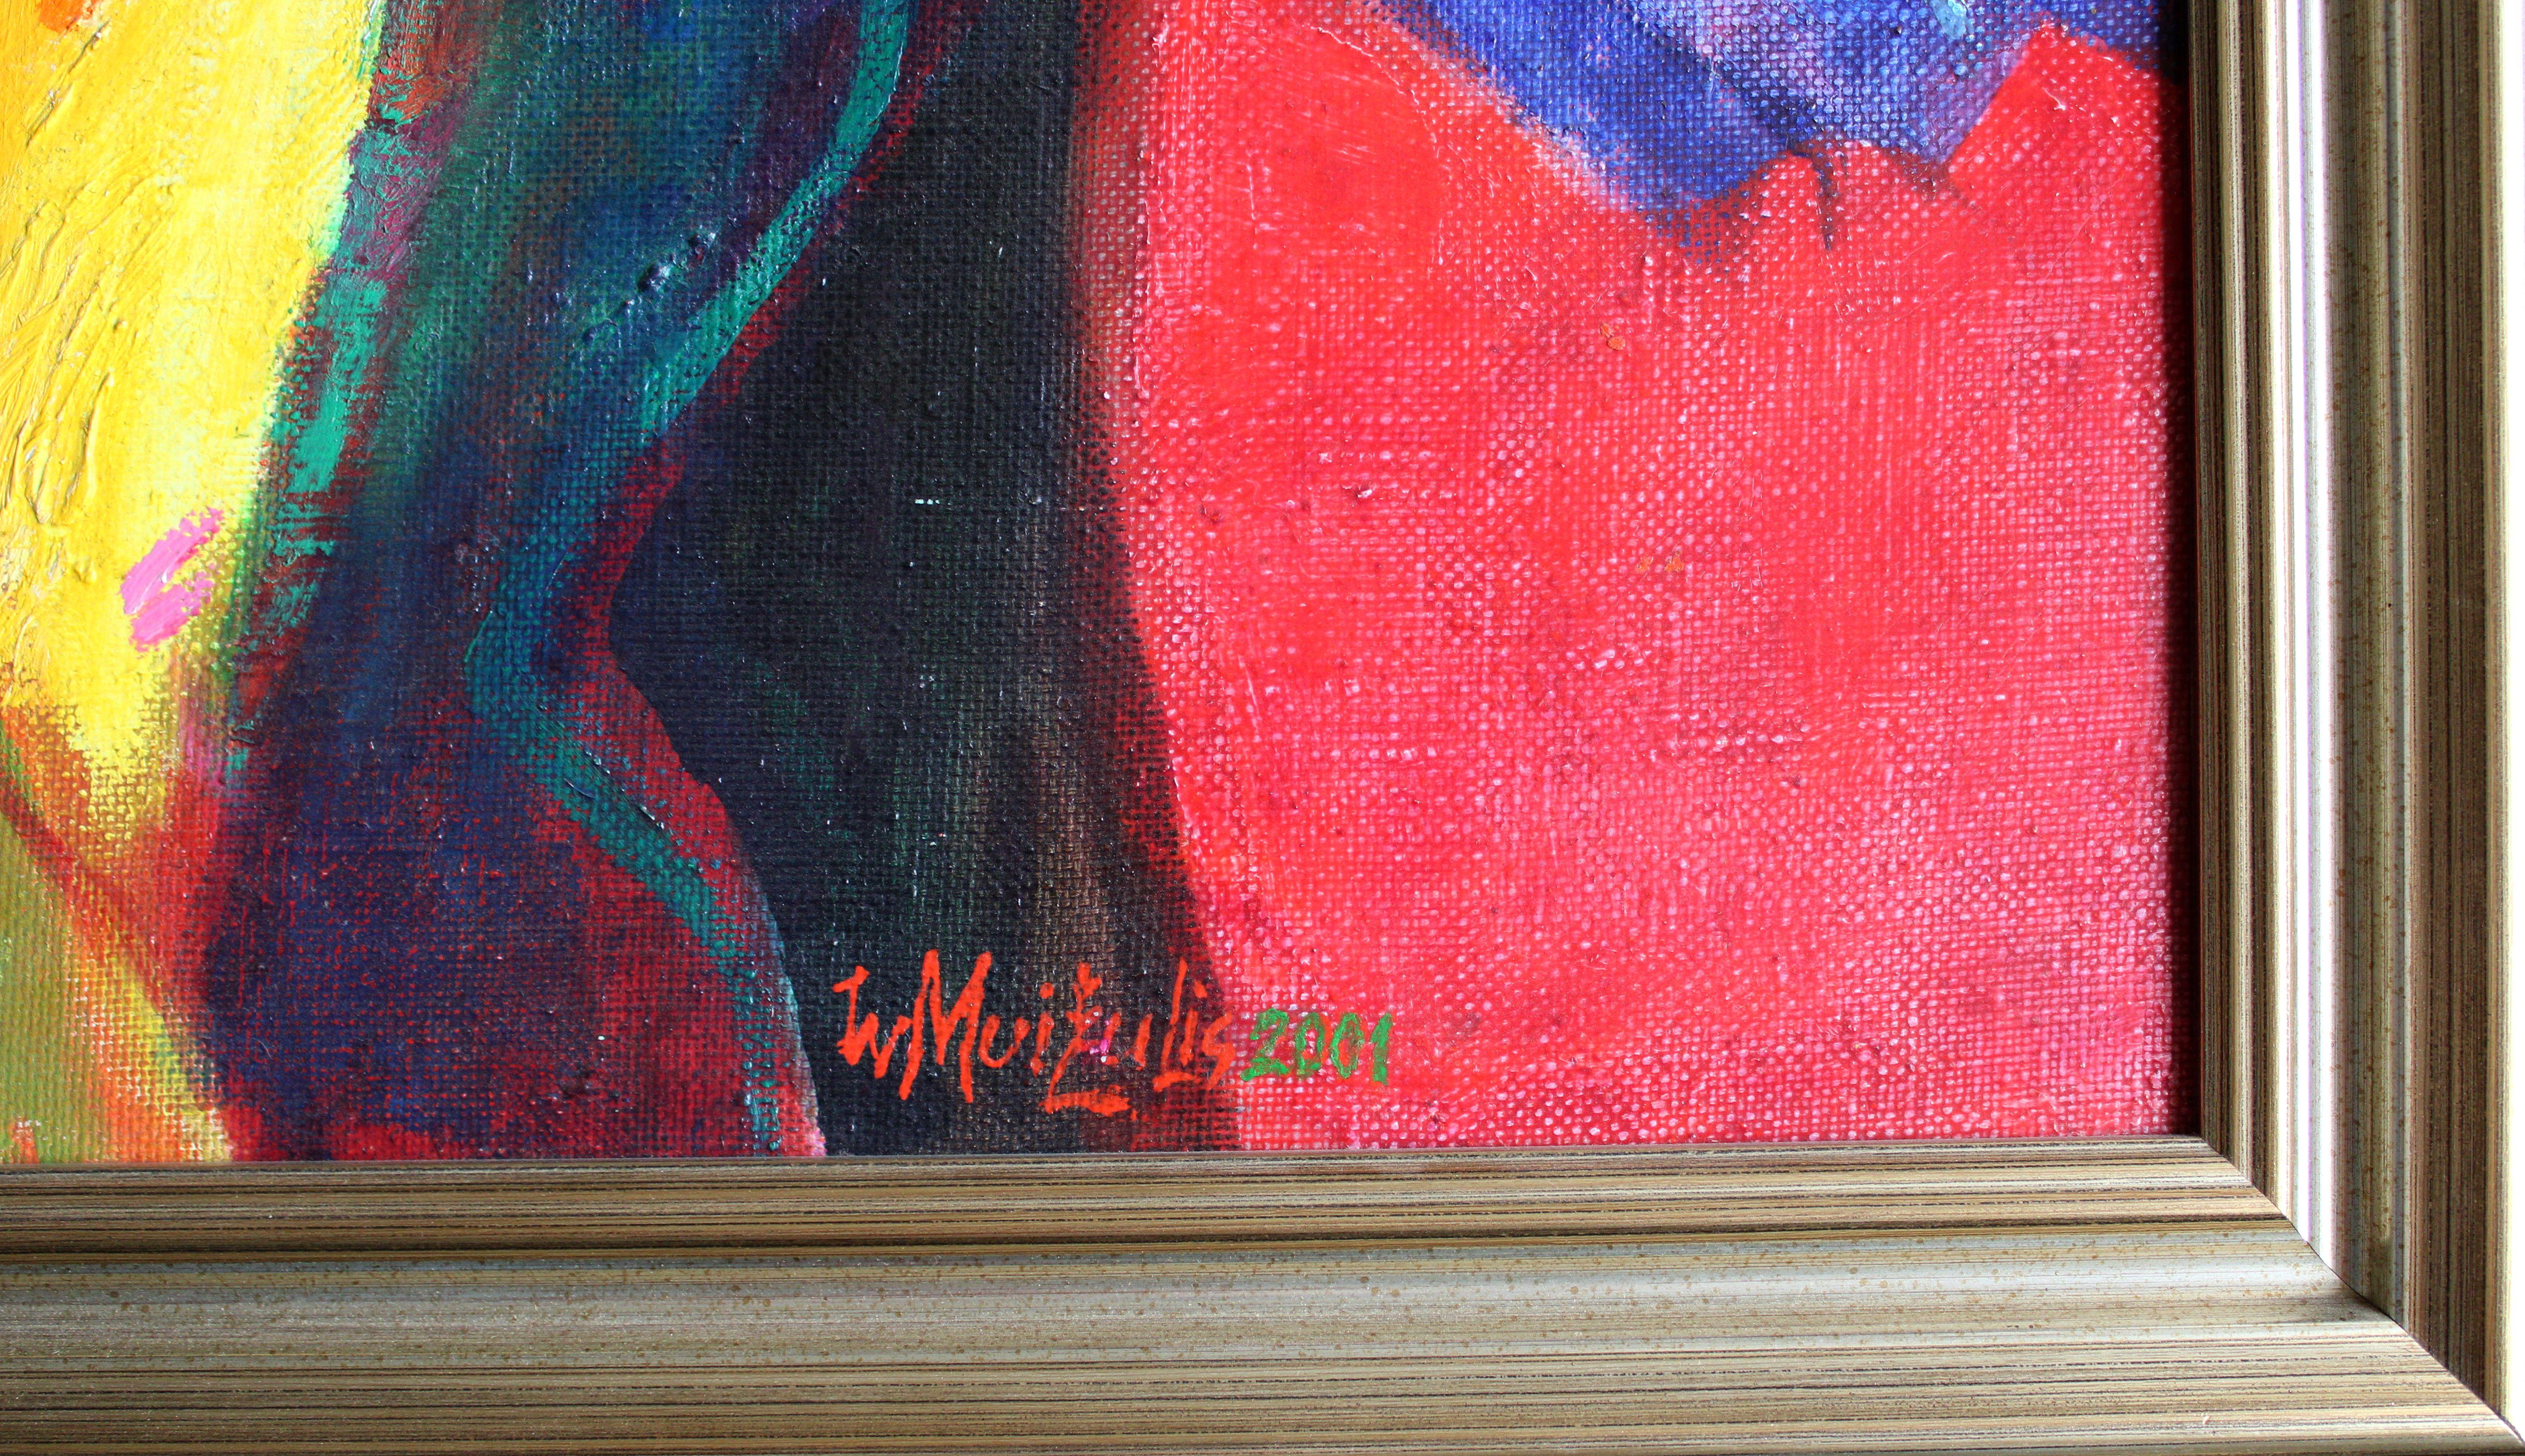 Lumière 2001. Toile, huile, 92x65 cm

L'œuvre d'art représente une figure féminine colorée et abstraite sur un fond de teintes roses et bleues.

Le point central du tableau est la figure de la femme, qui est représentée de manière abstraite.